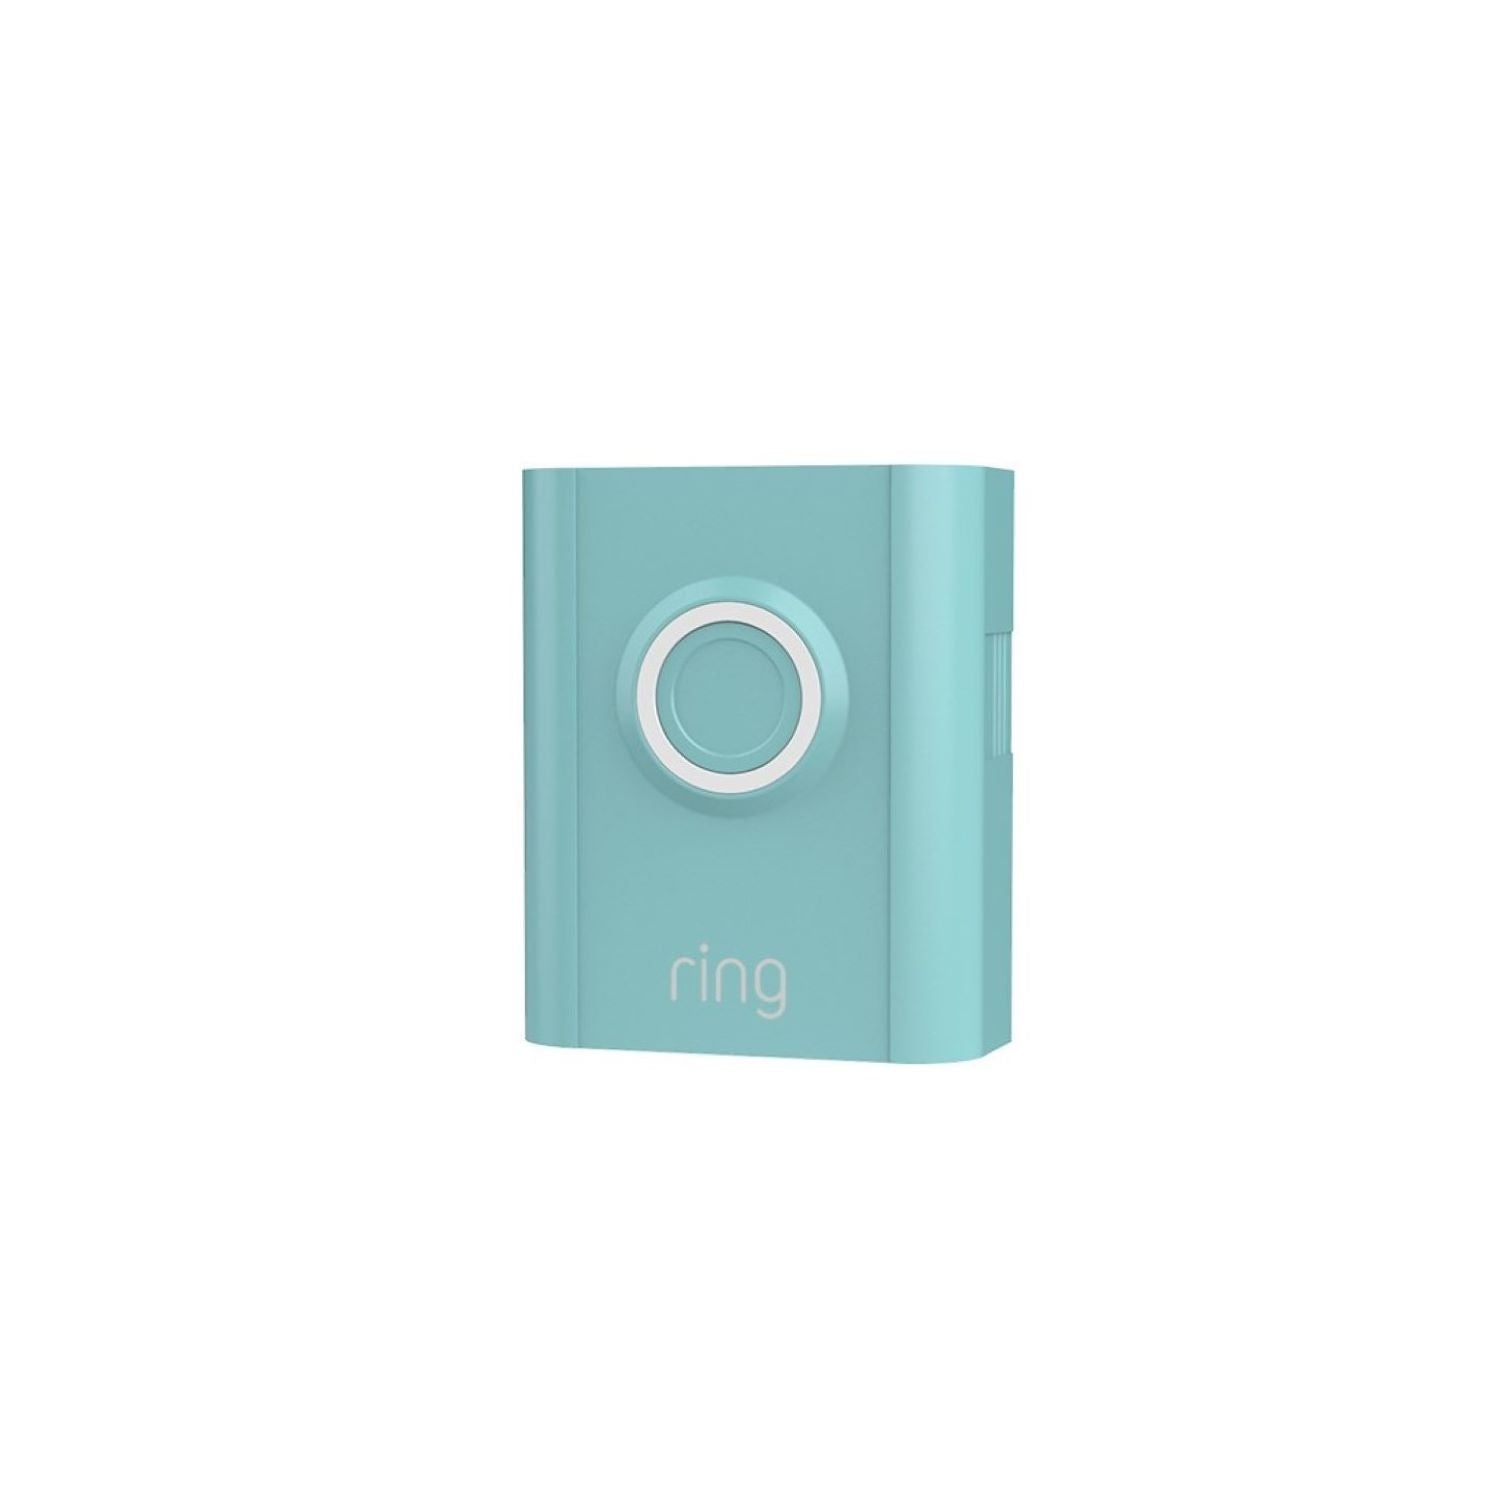 Interchangeable Faceplate (for Video Doorbell 3, Video Doorbell 3 Plus, Video Doorbell 4, Battery Video Doorbell Plus, Battery Video Doorbell Pro) - Blue Print